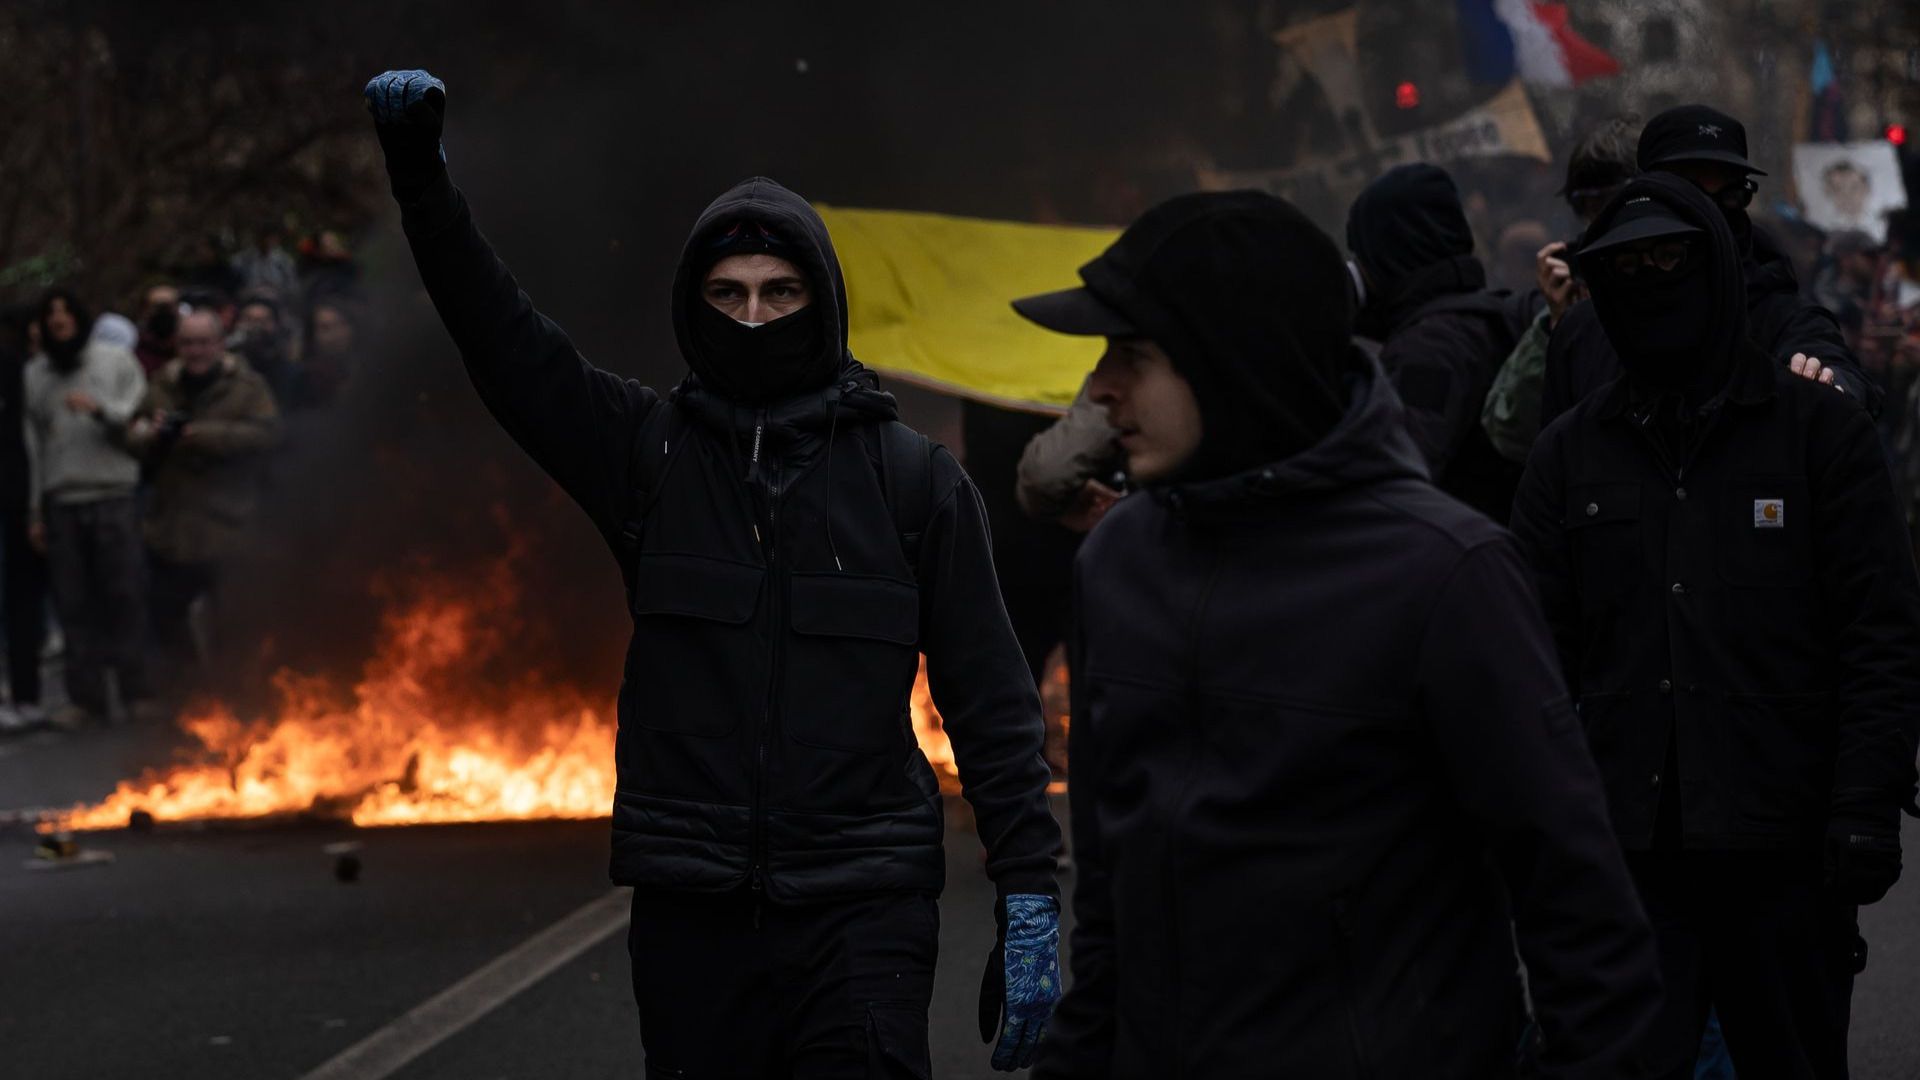 Участники протестов в Париже захватили офис инвестфонда BlackRock